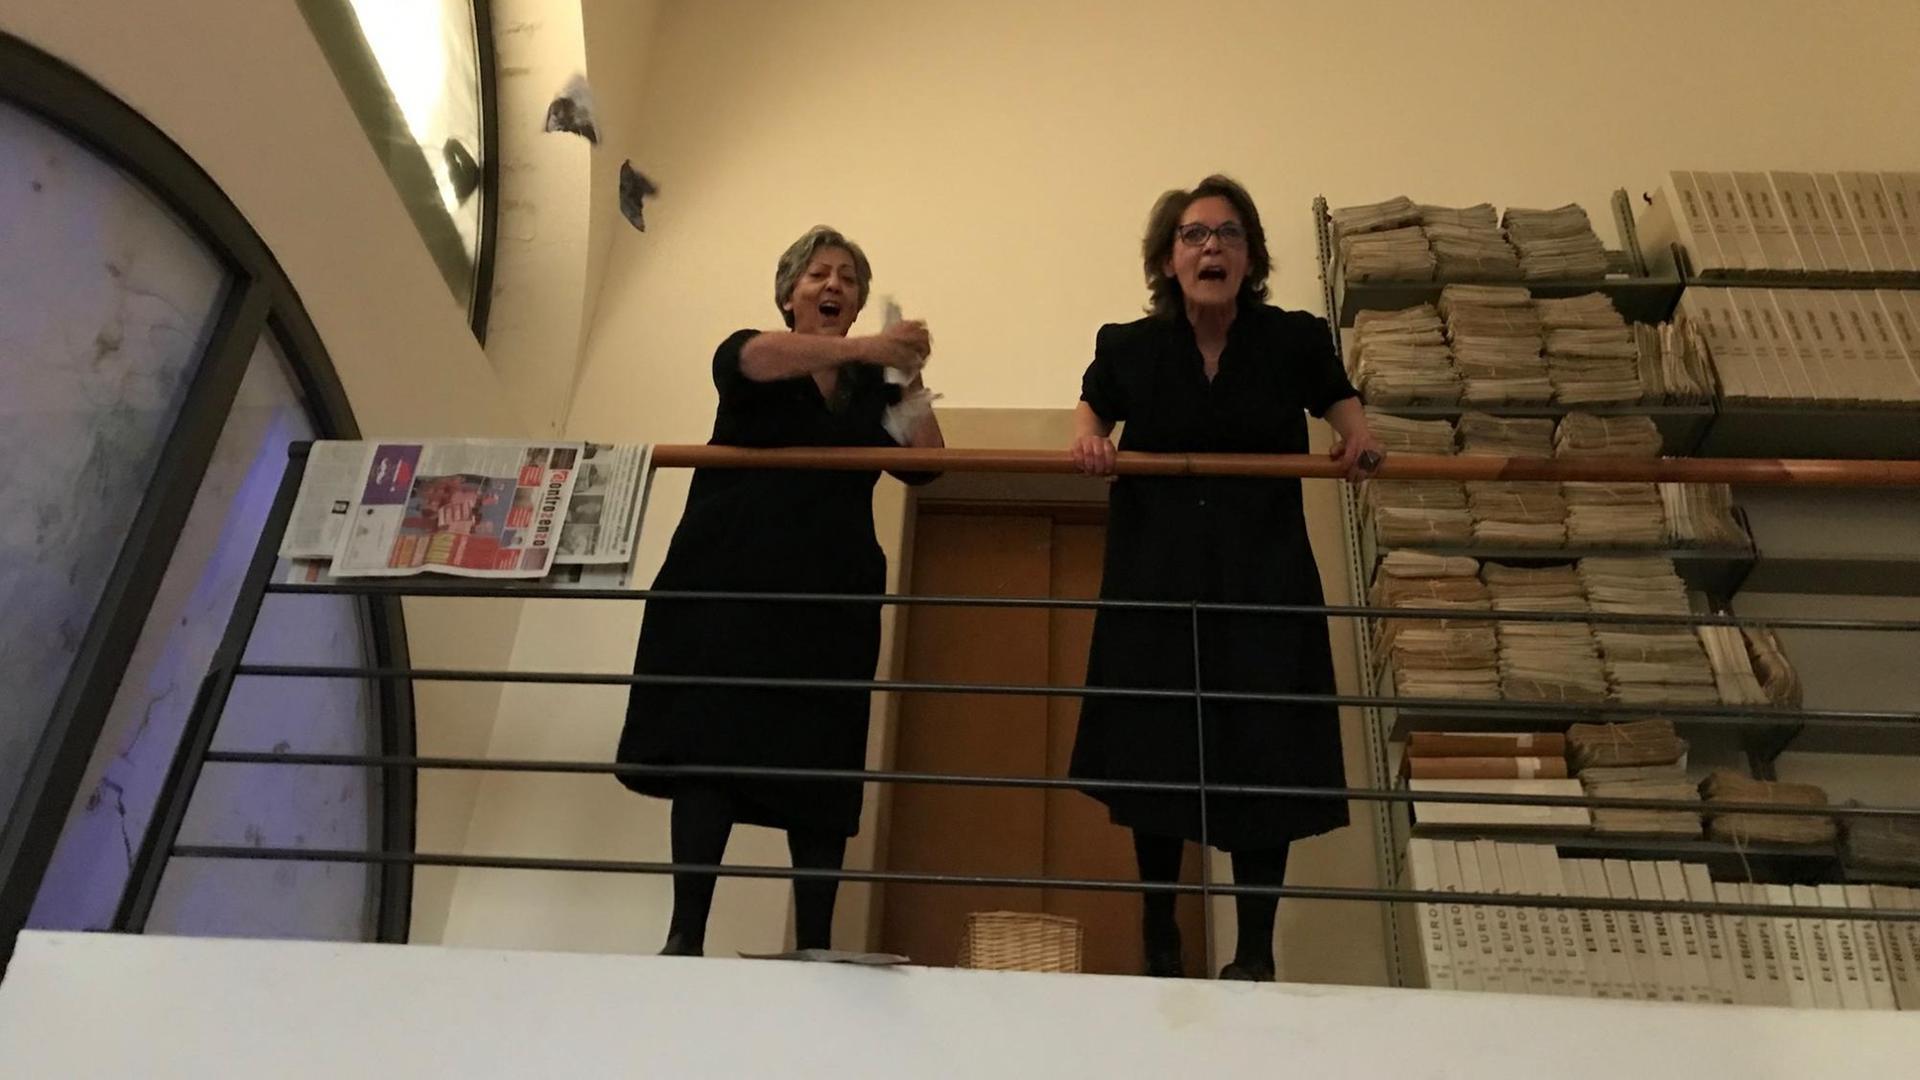 Schreien ihre Wut heraus: Teresa und Chiara stehen bei der Performance in der Bibliothek von Matera, rufen und werfen Papier in die Luft